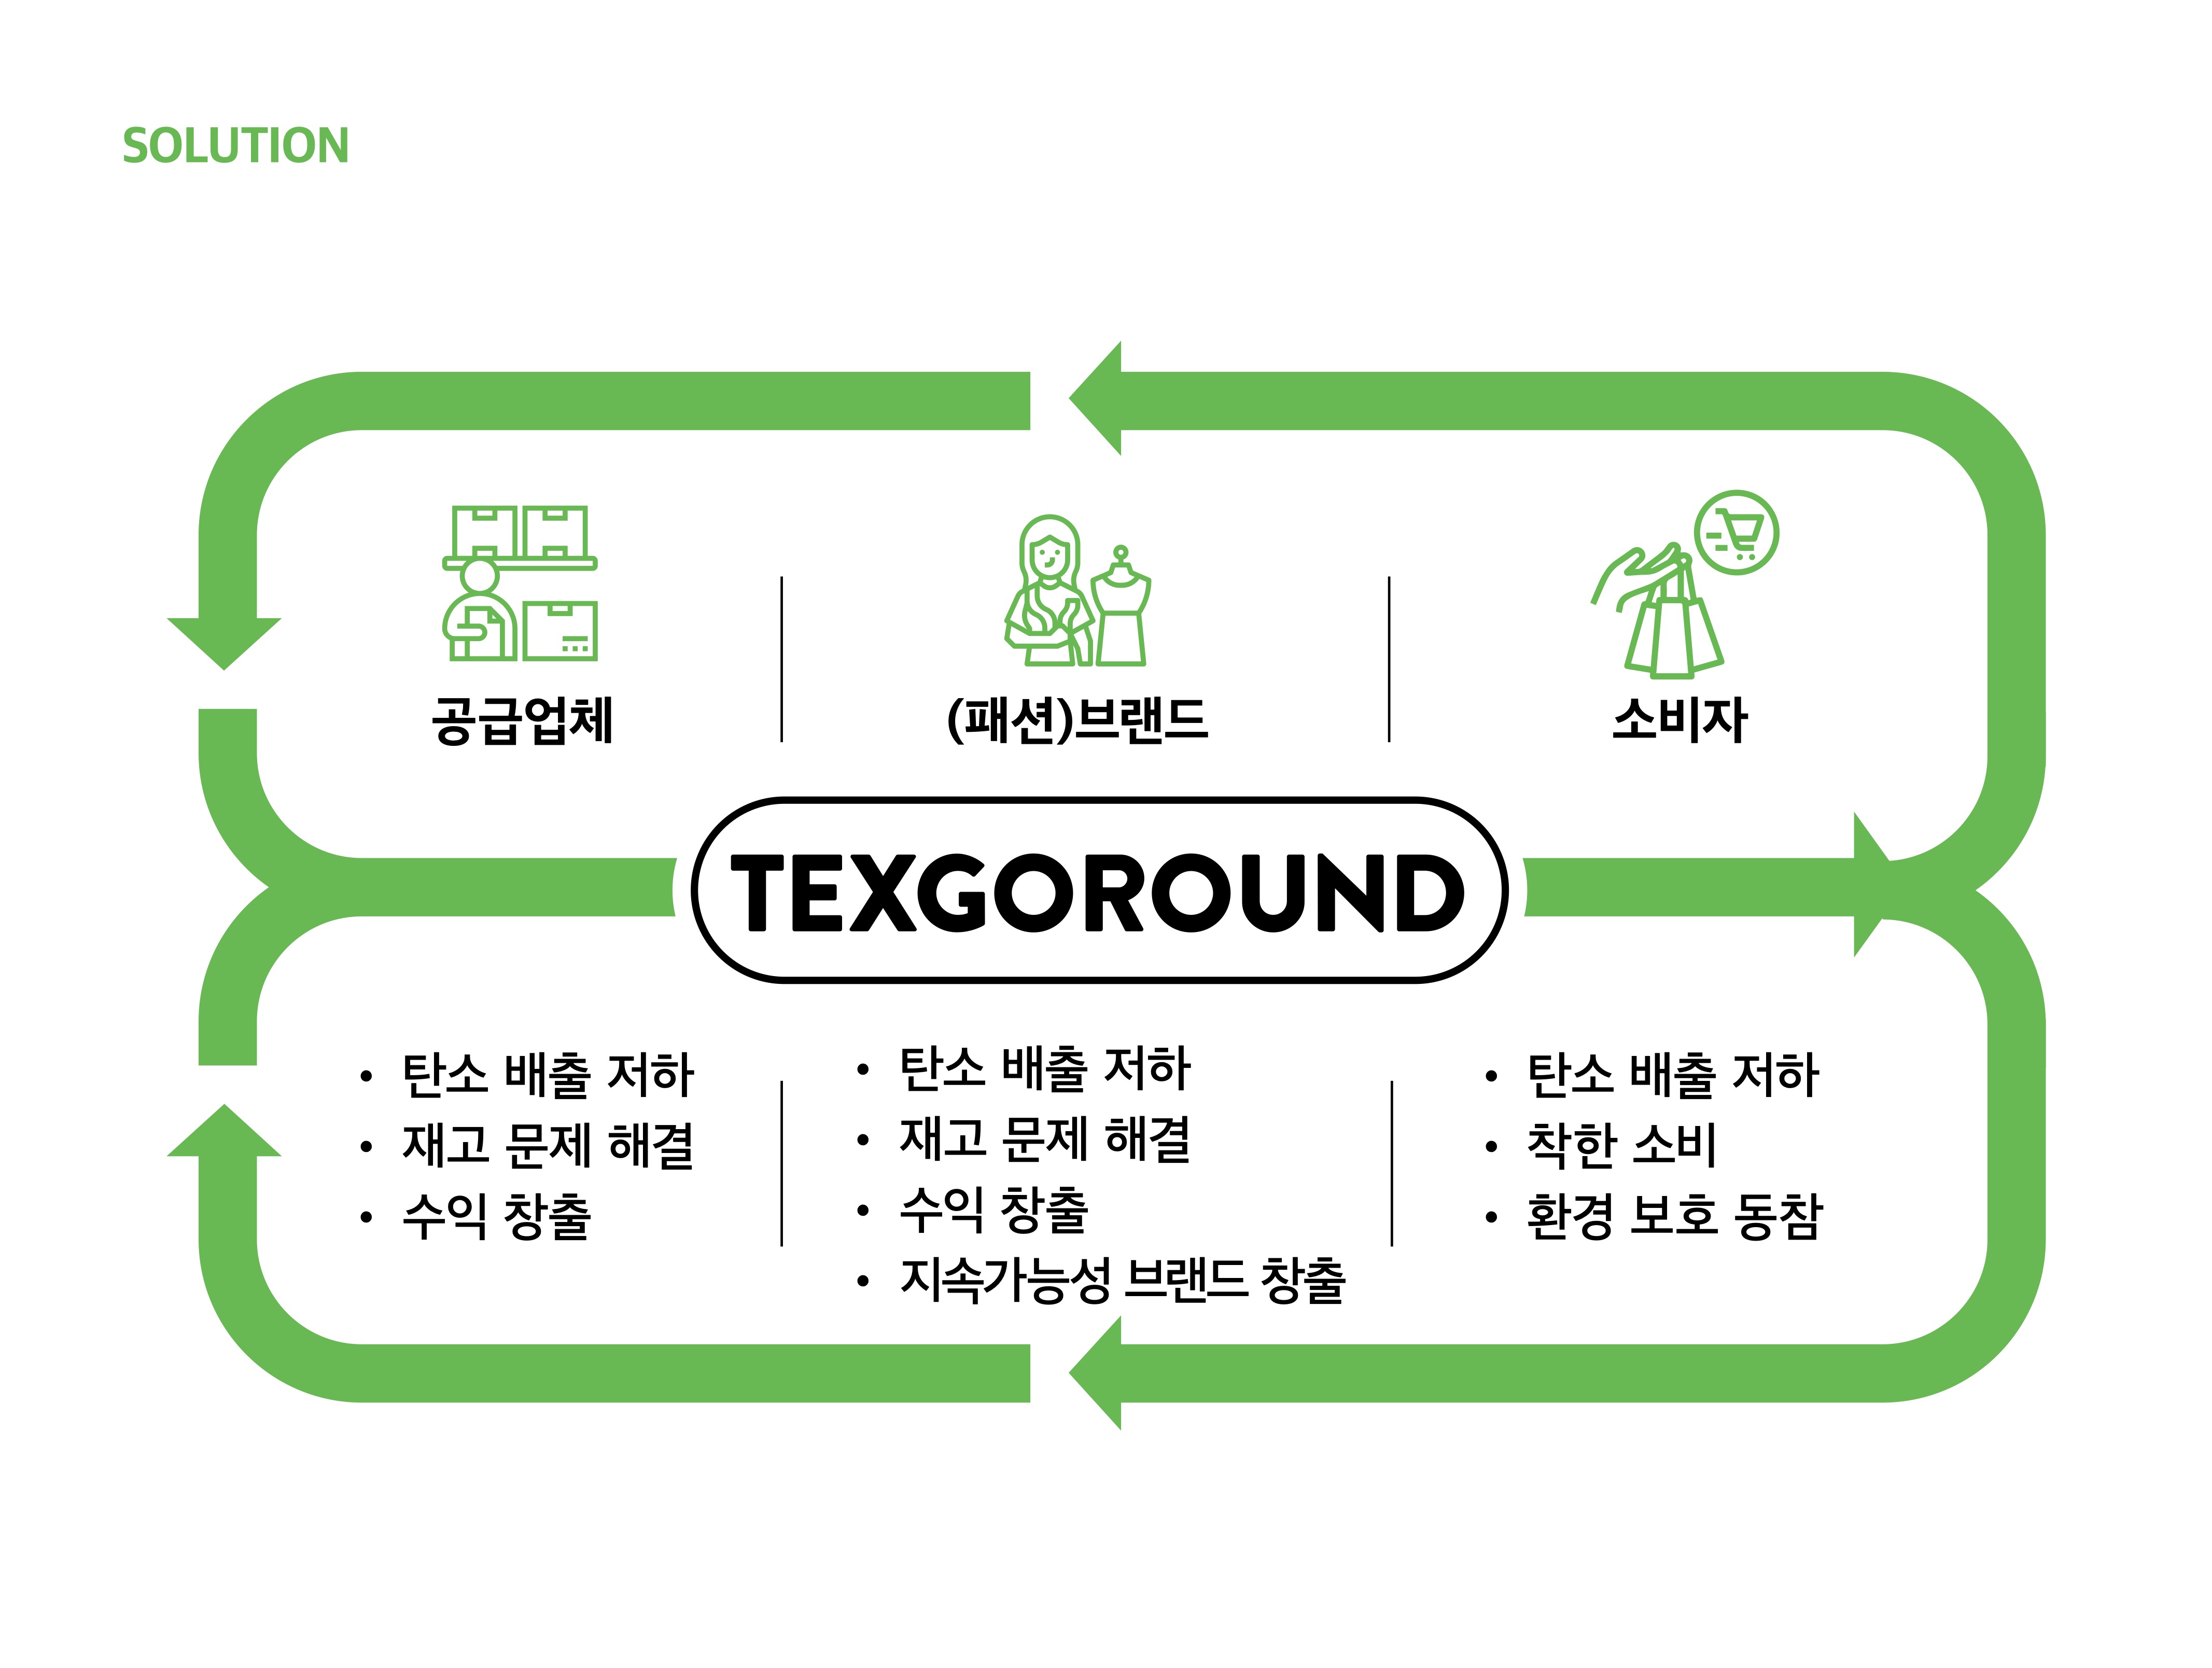 패션 원부자재 기업과 패션 브랜드가 지속가능성을 실행할 수 있는 방법, TEXGOROUND.